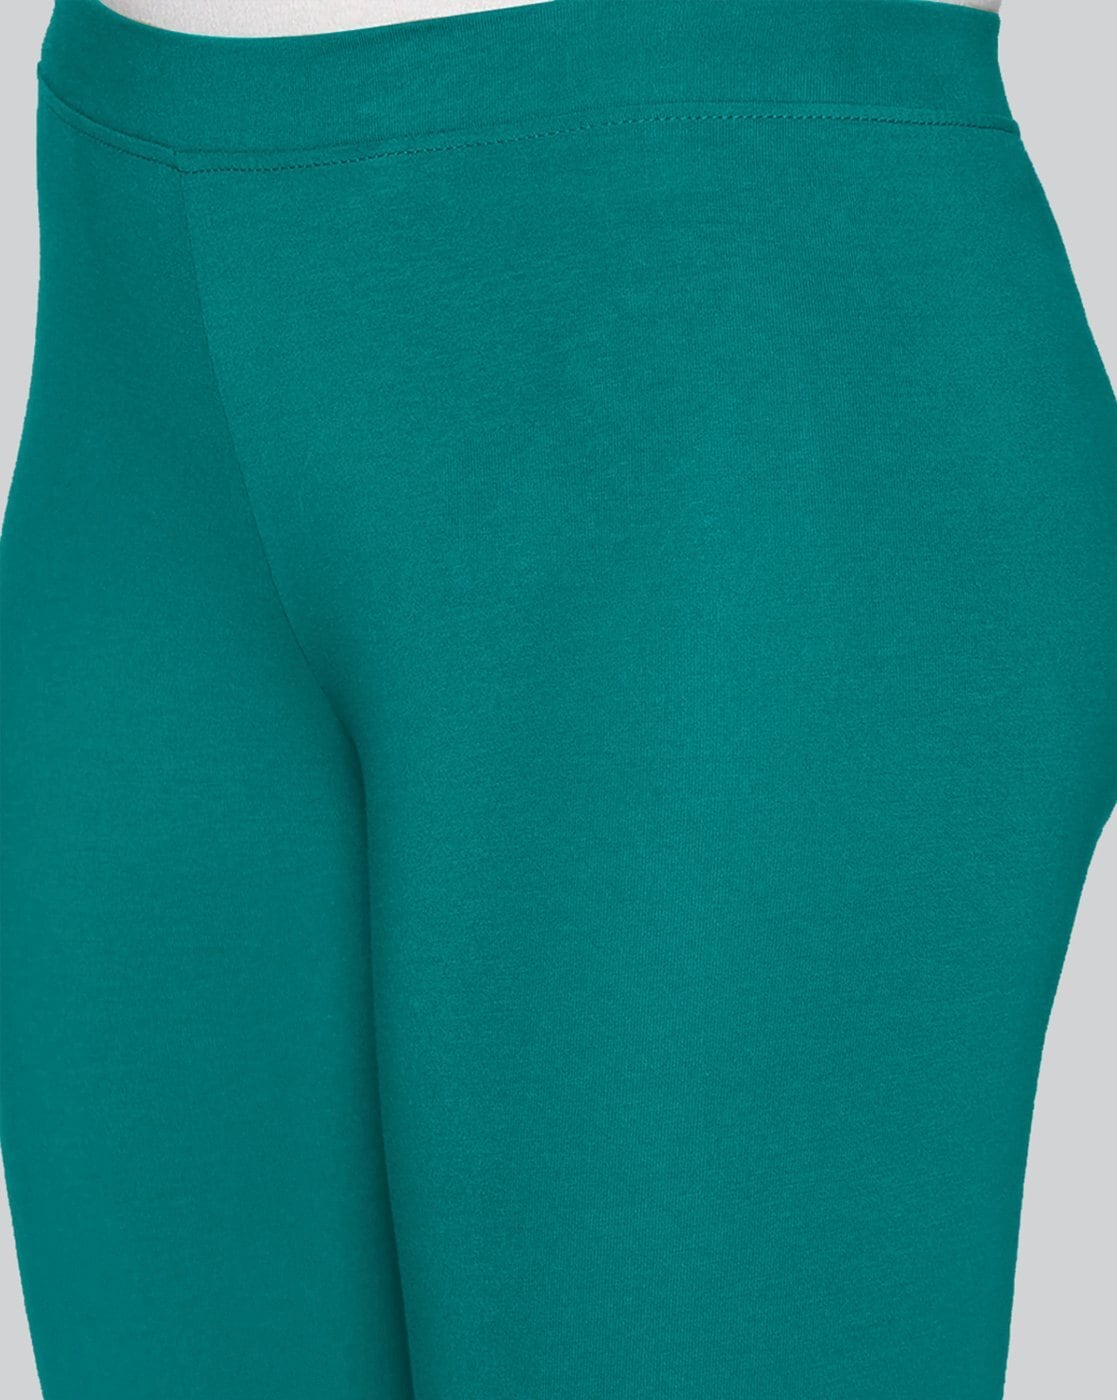 Buy Turquoise Leggings for Women by LYRA Online